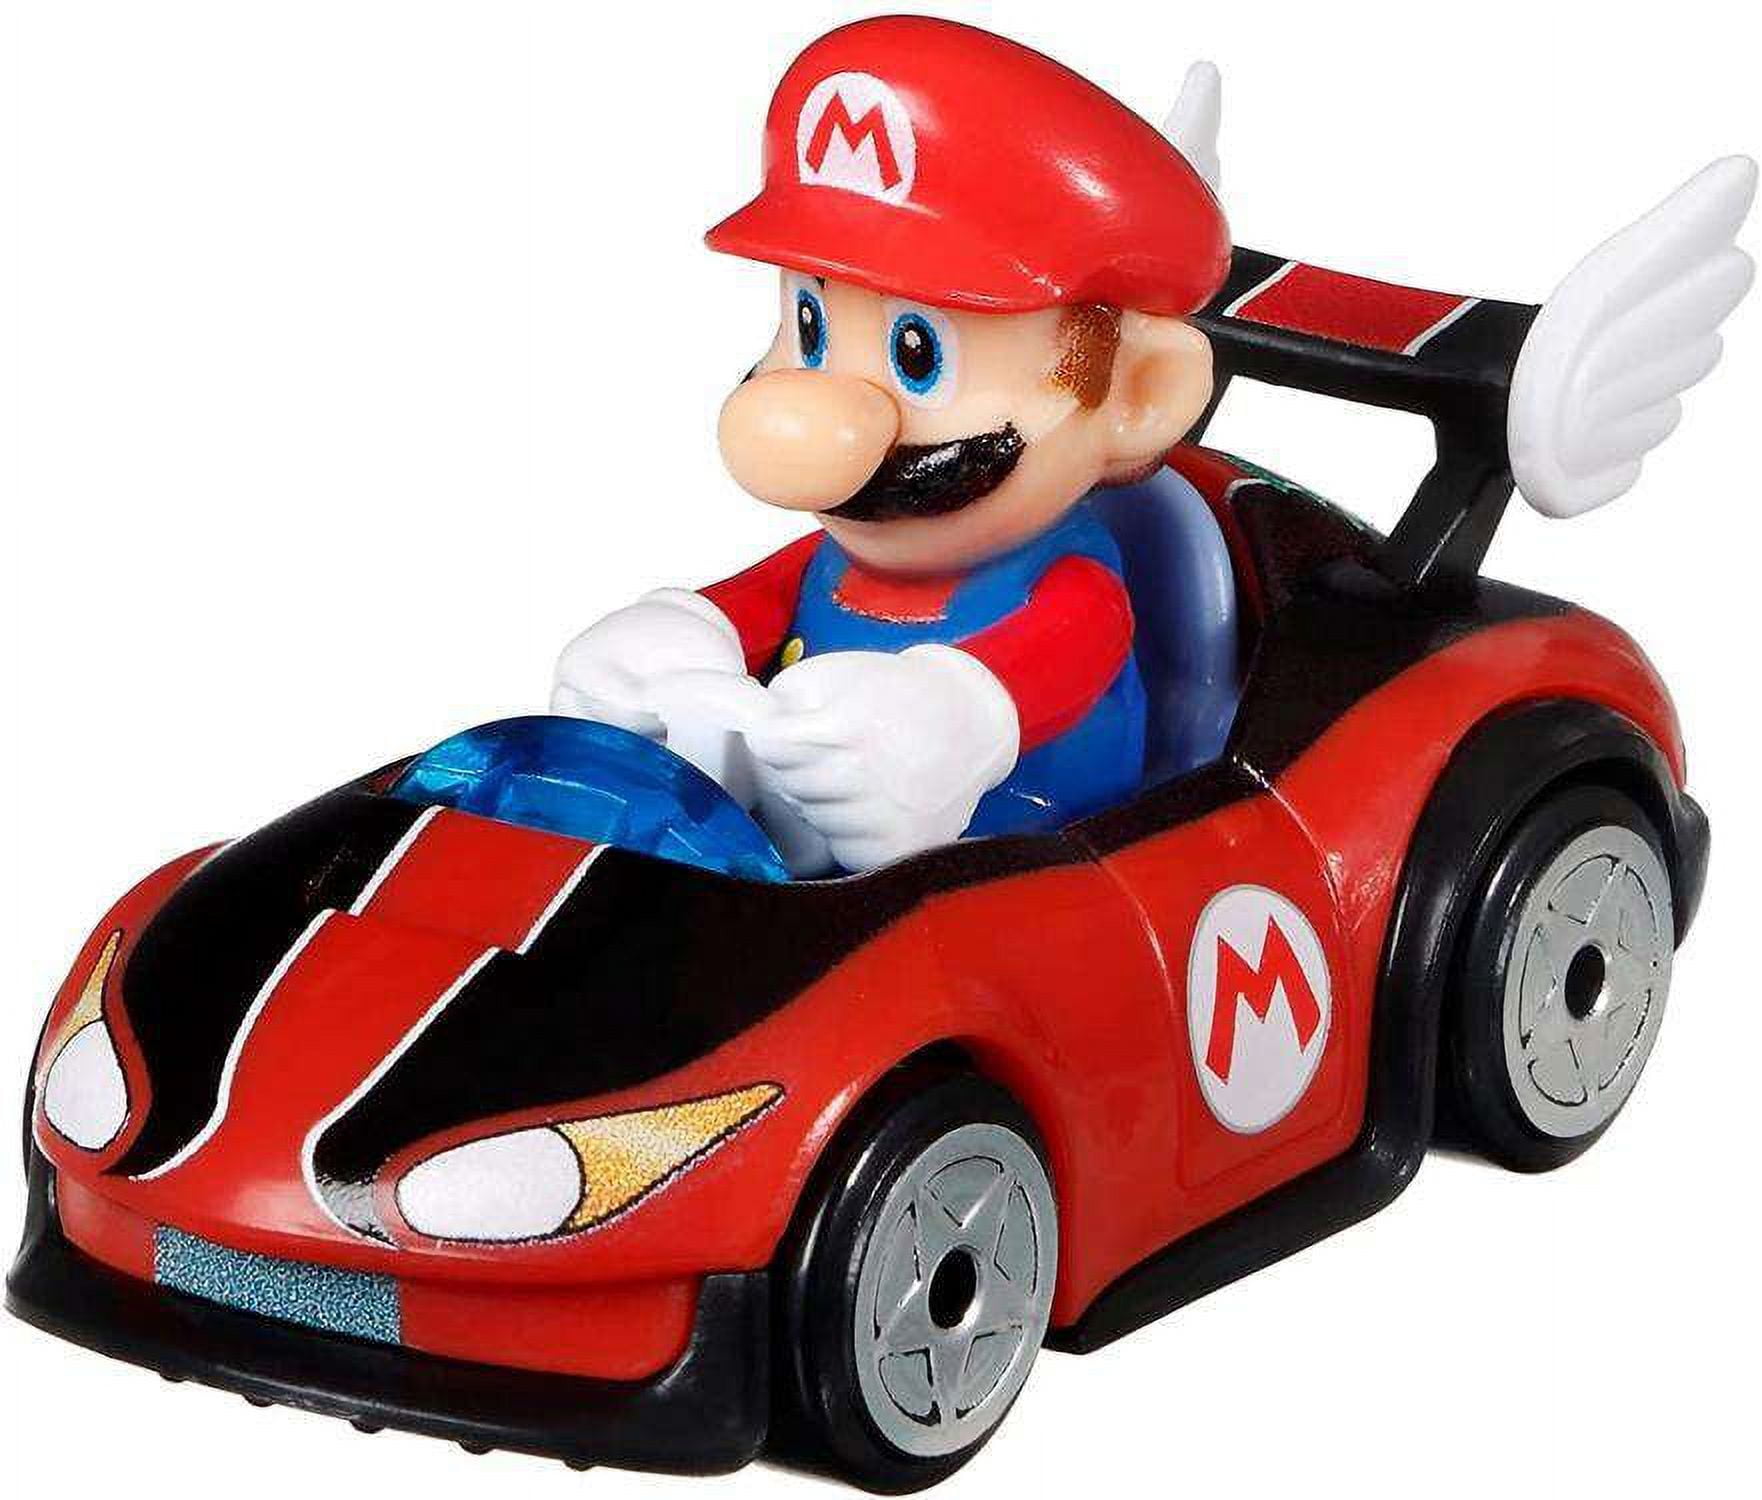 Mattel® Hot Wheels® Mario Kart™ Mario P-Wing Vehicle, 1 ct - Kroger